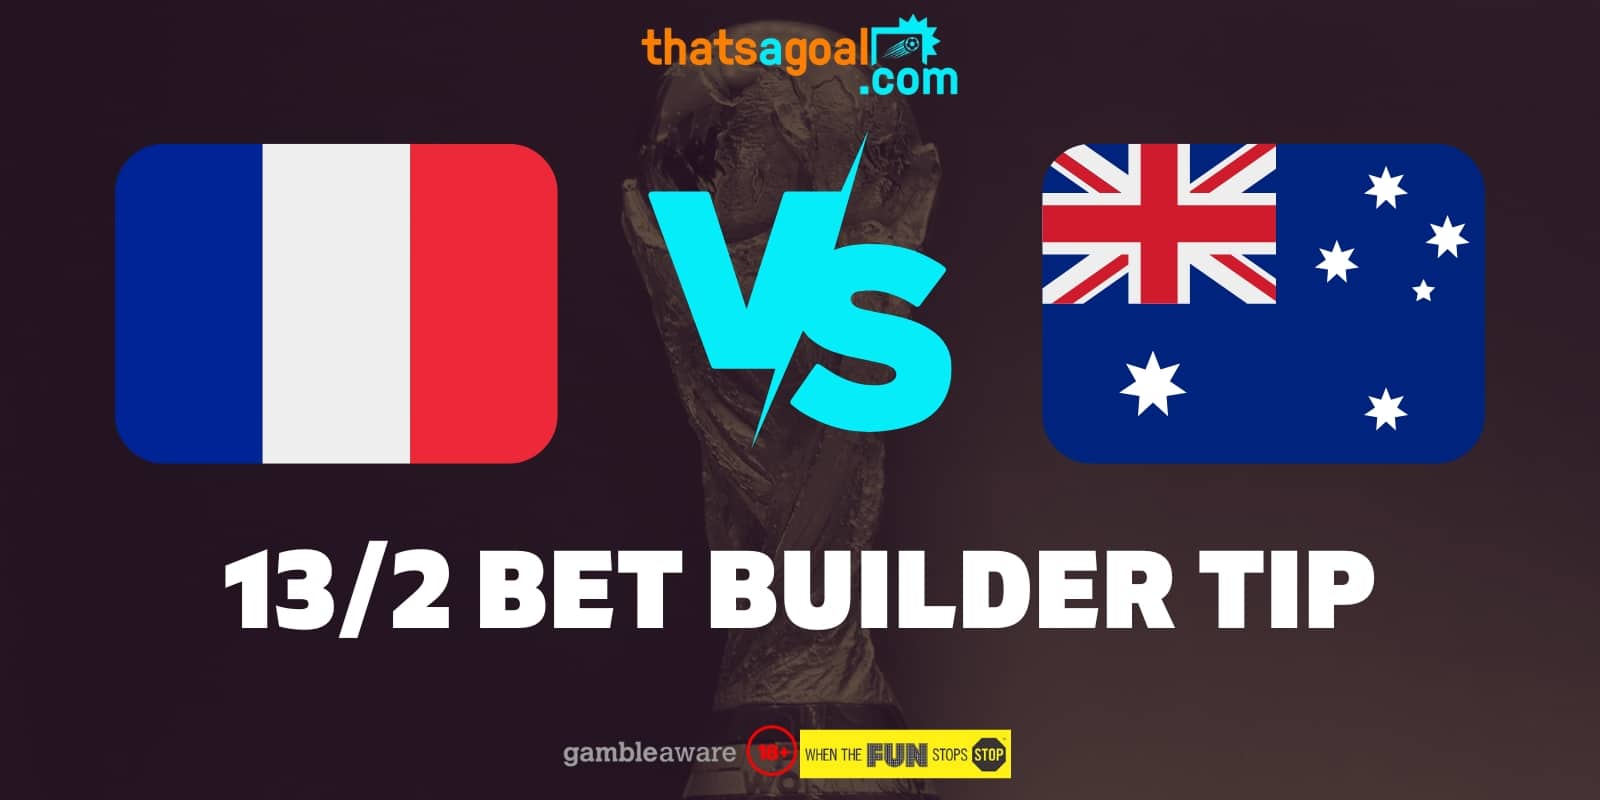 France vs Australia bet builder tip